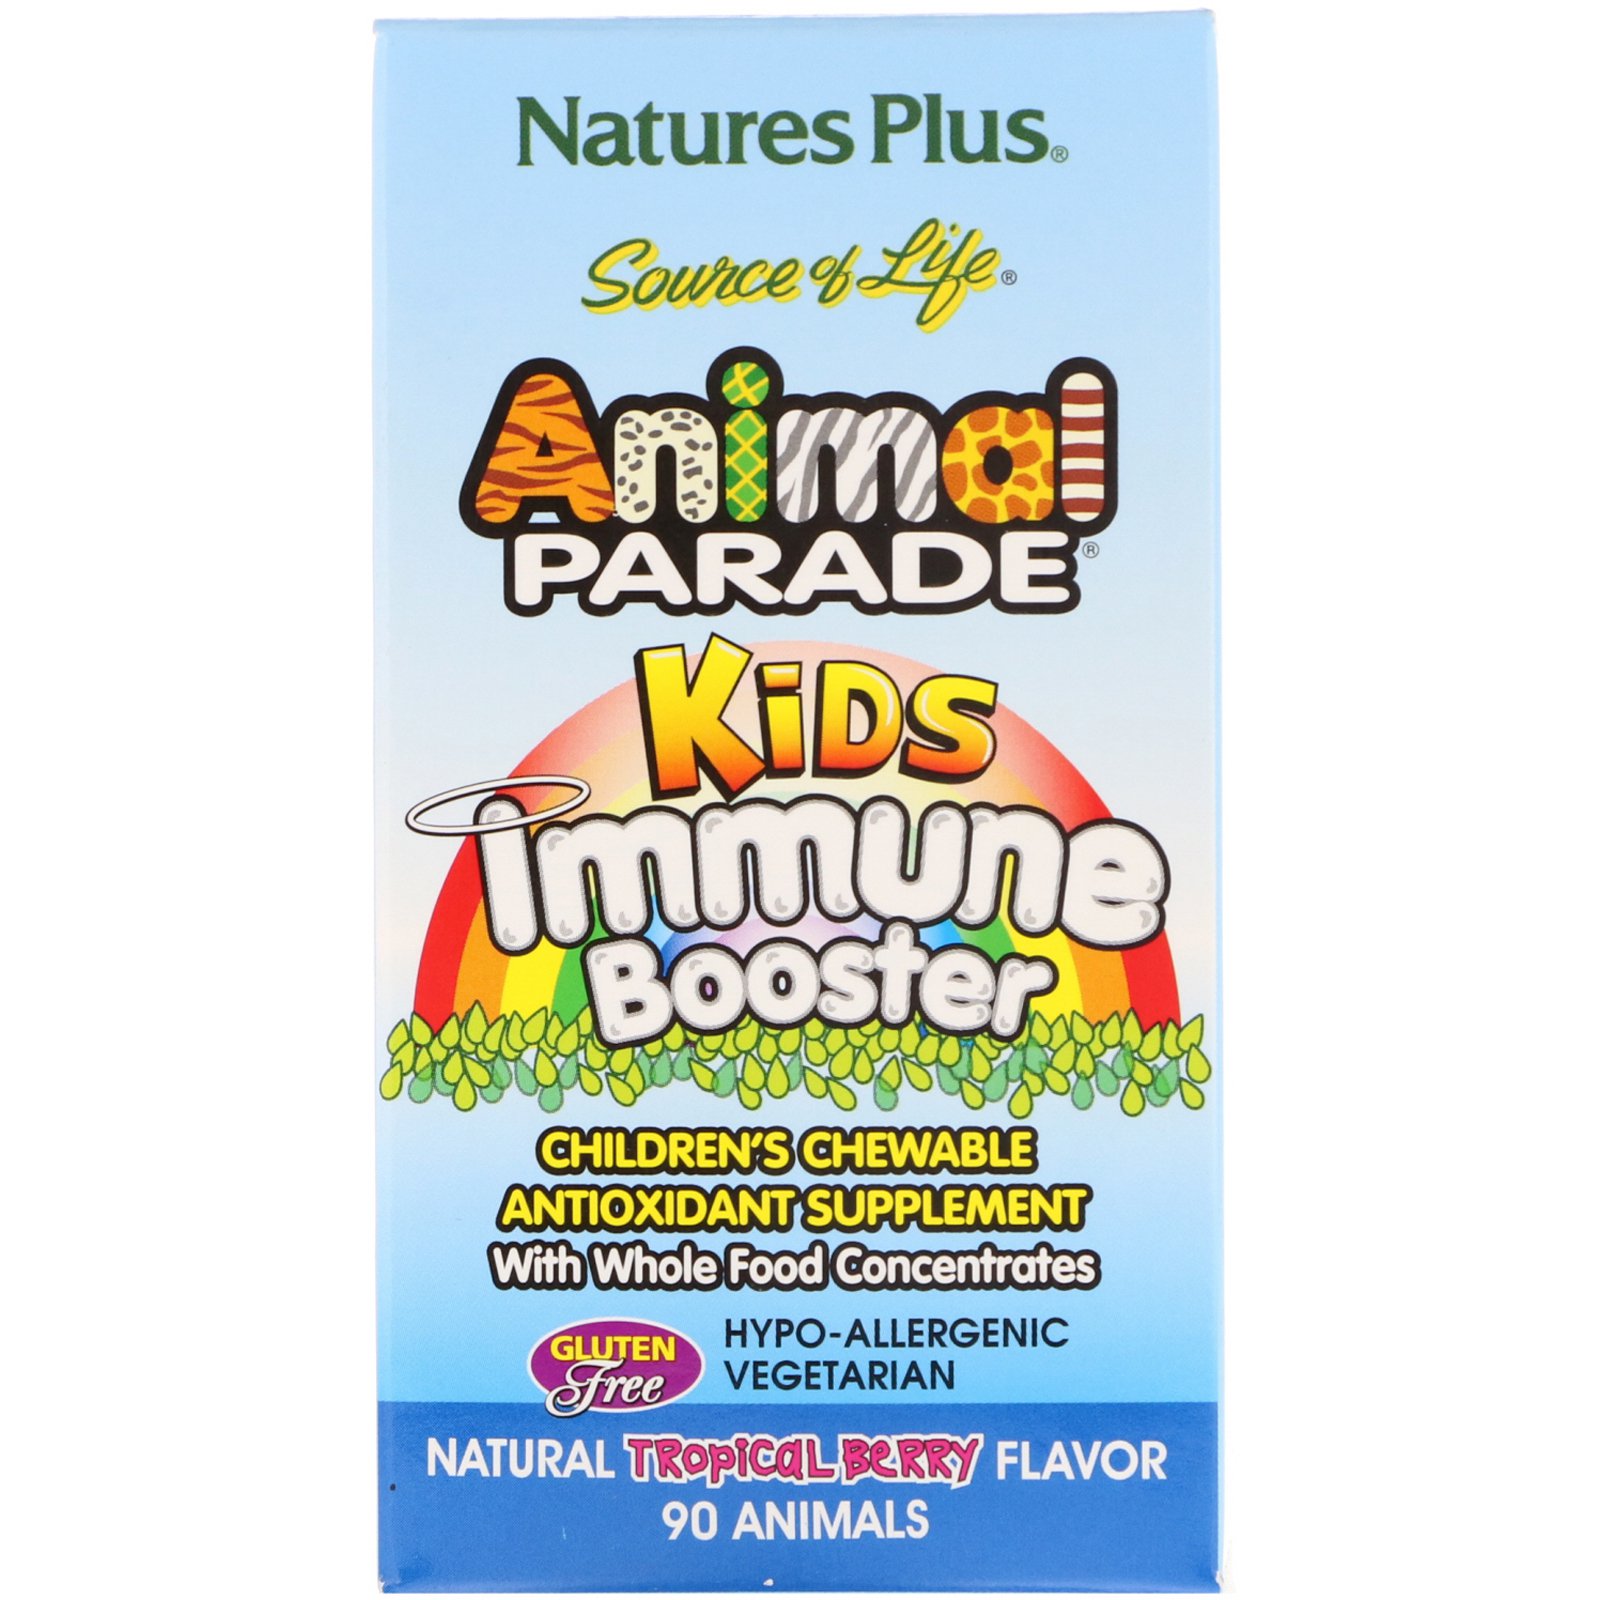 Nature's Plus, Source of Life, Animal Parade, укрепление детского иммунитета, вкус натуральных тропических ягод, 90 животных